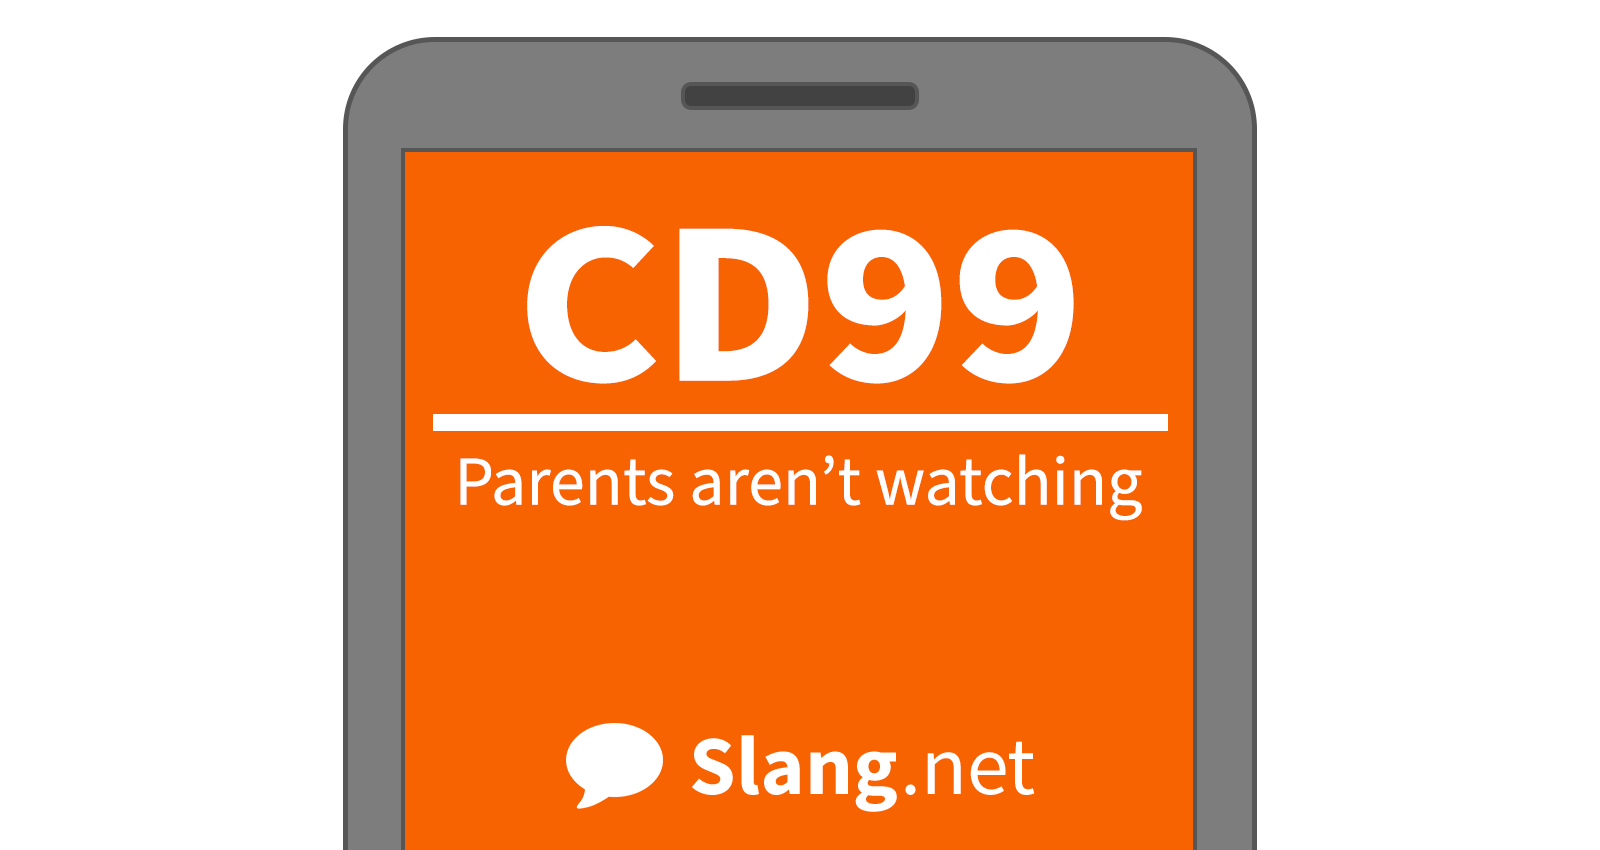 CD99 means &quot;parents aren't watching&quot;